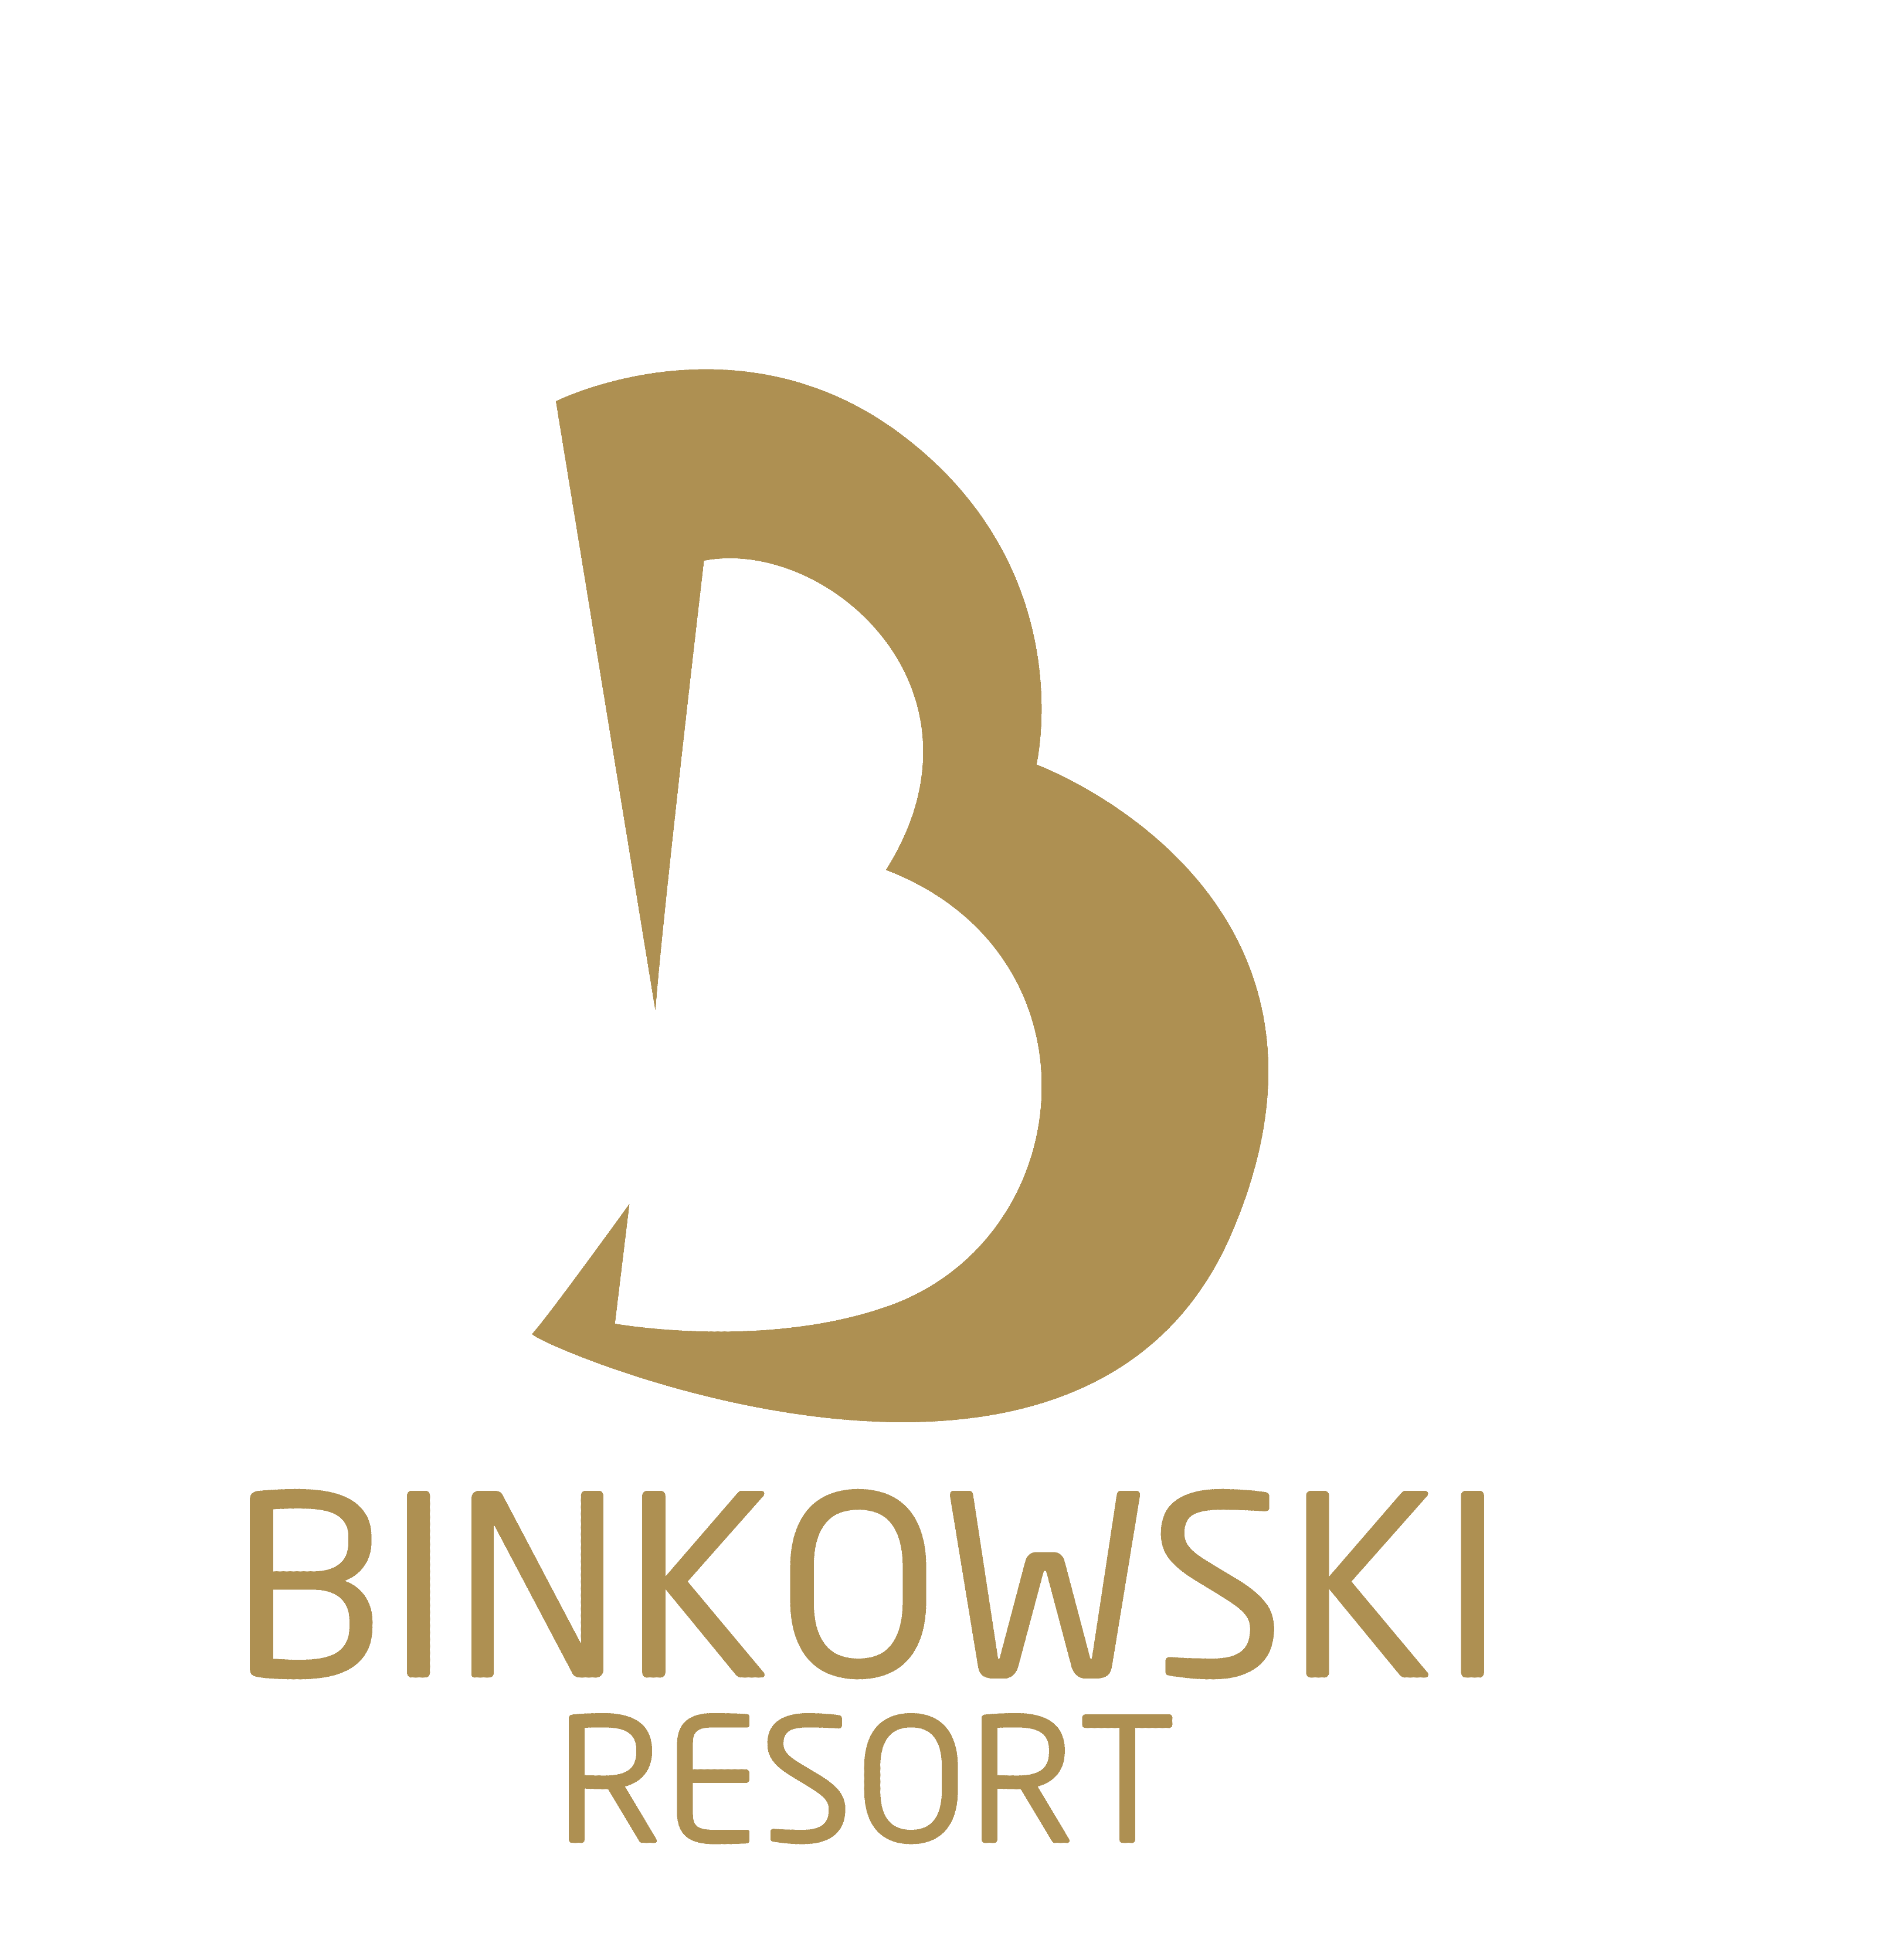 Binkowski Resort, Kielce